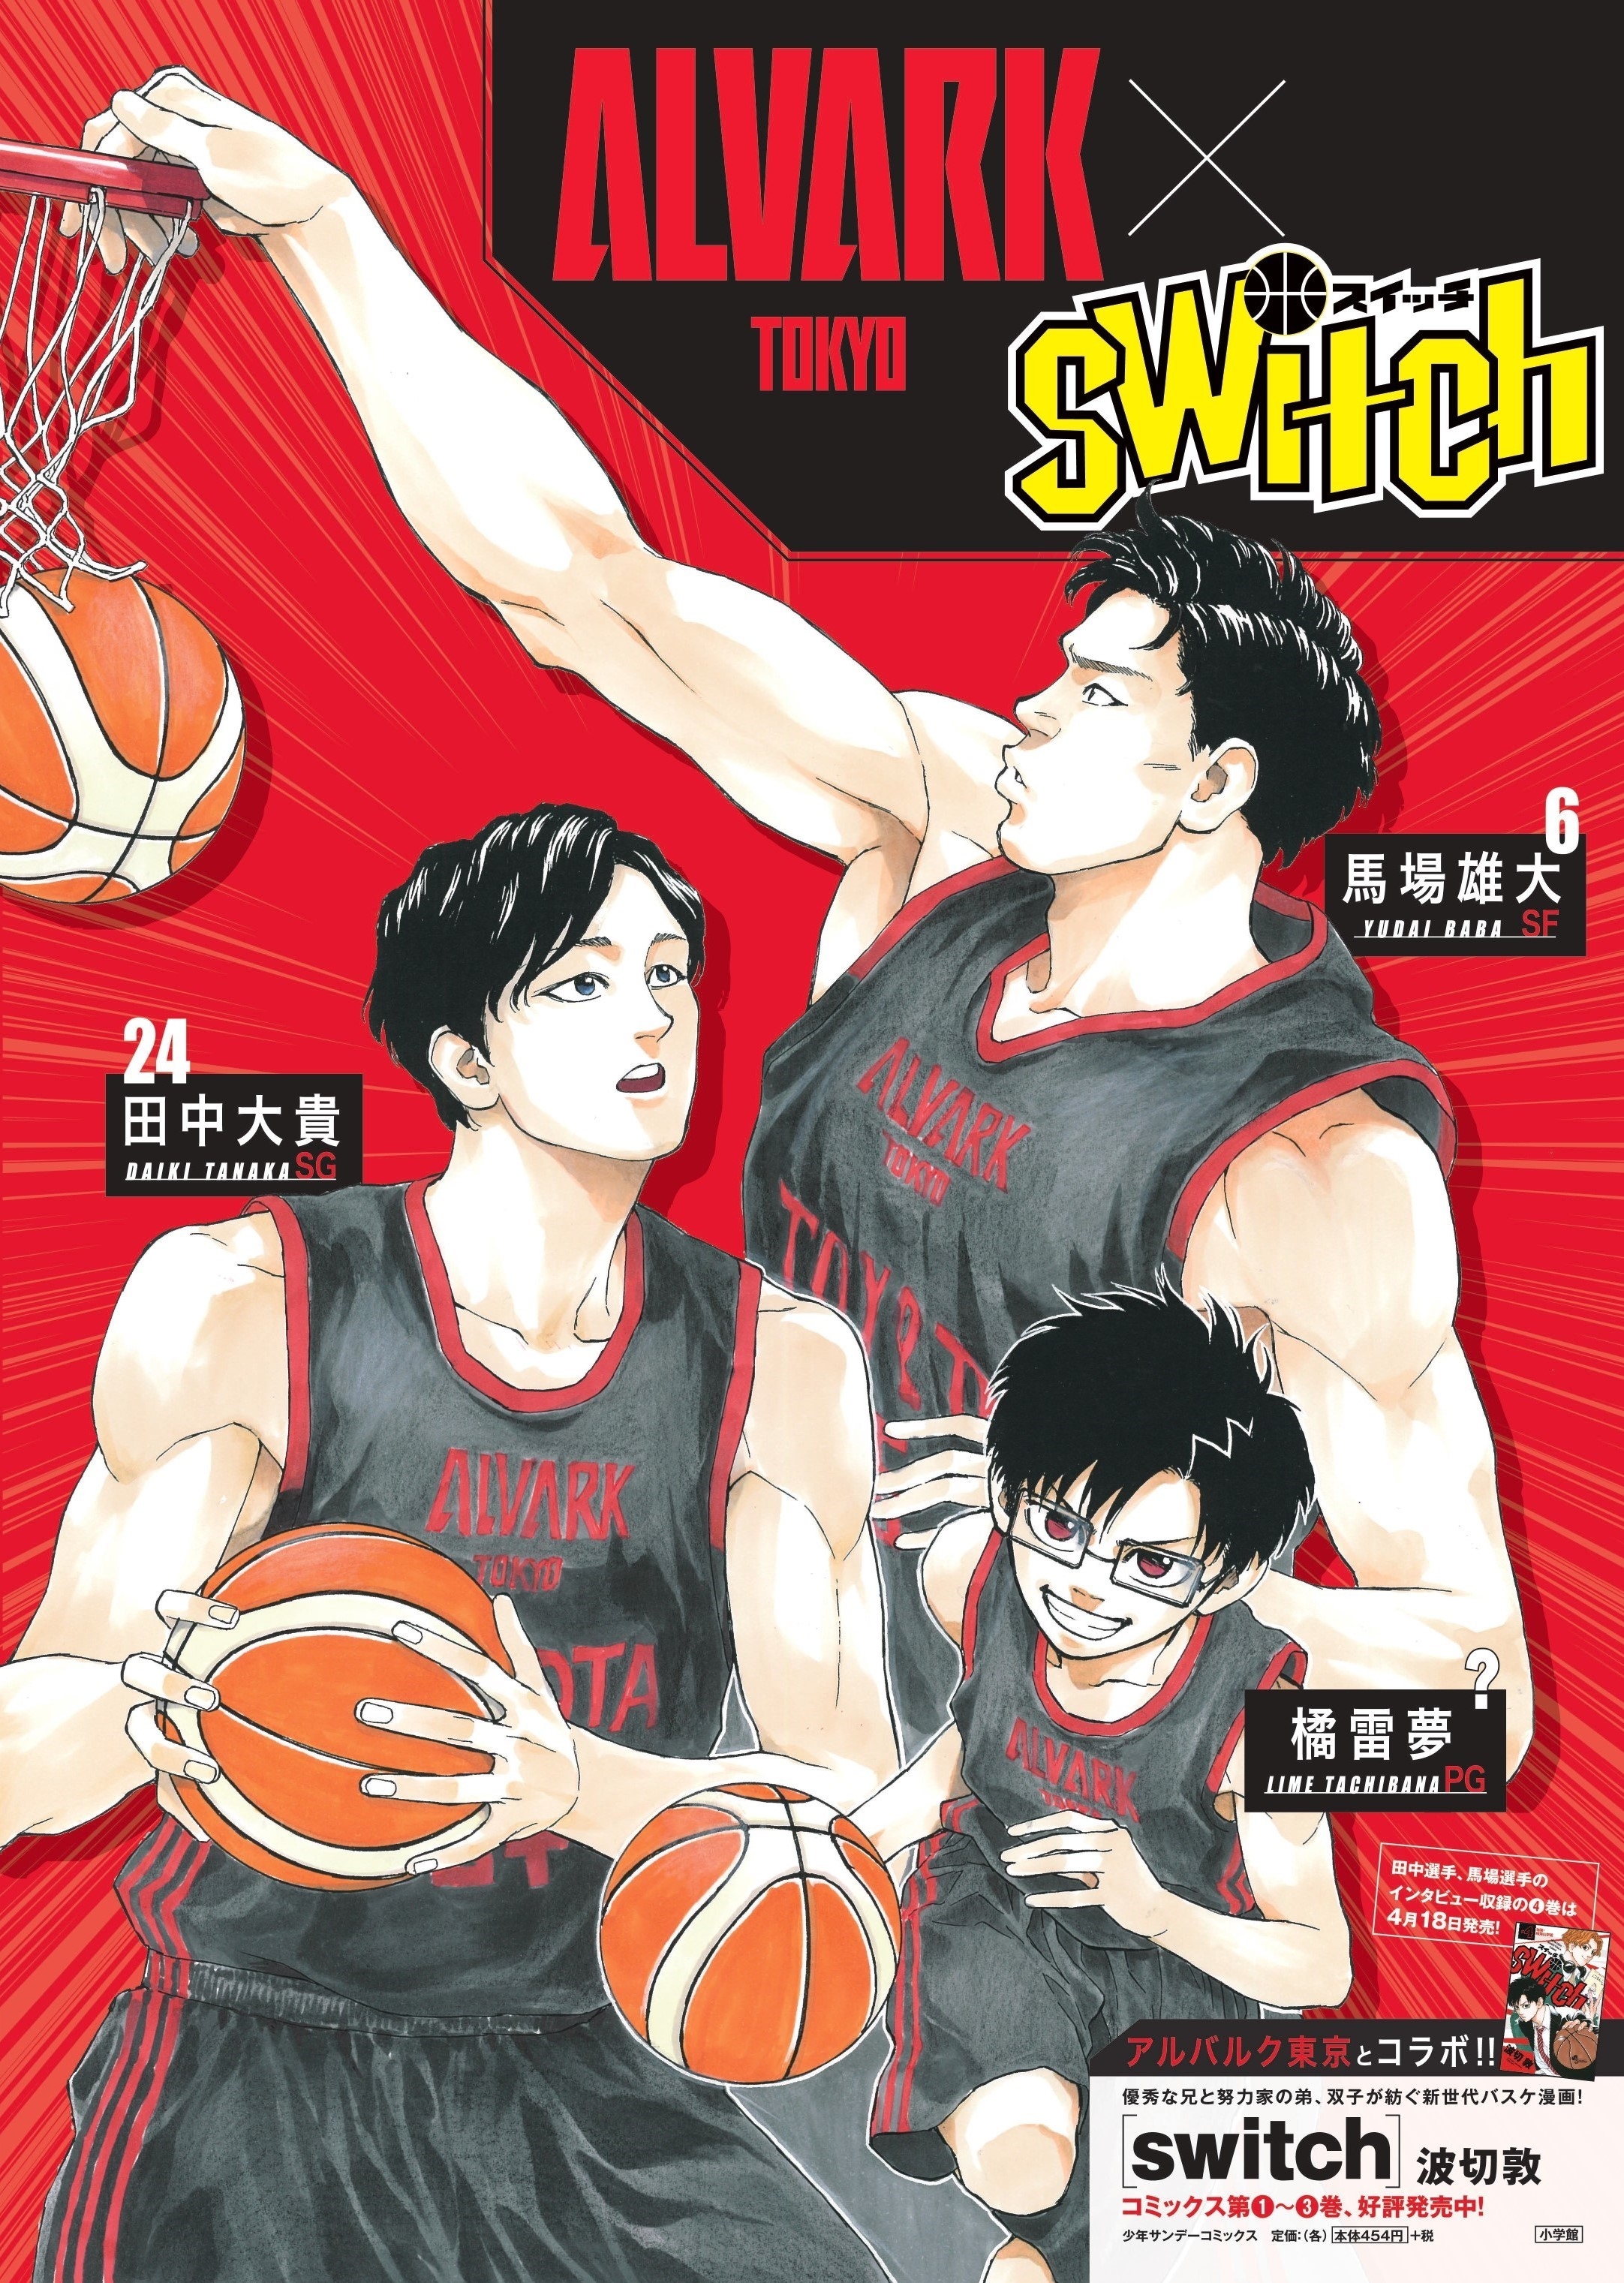 週刊少年サンデー連載中のバスケ漫画 Switch とのコラボ企画実施のお知らせ アルバルク東京 スポーツナビ